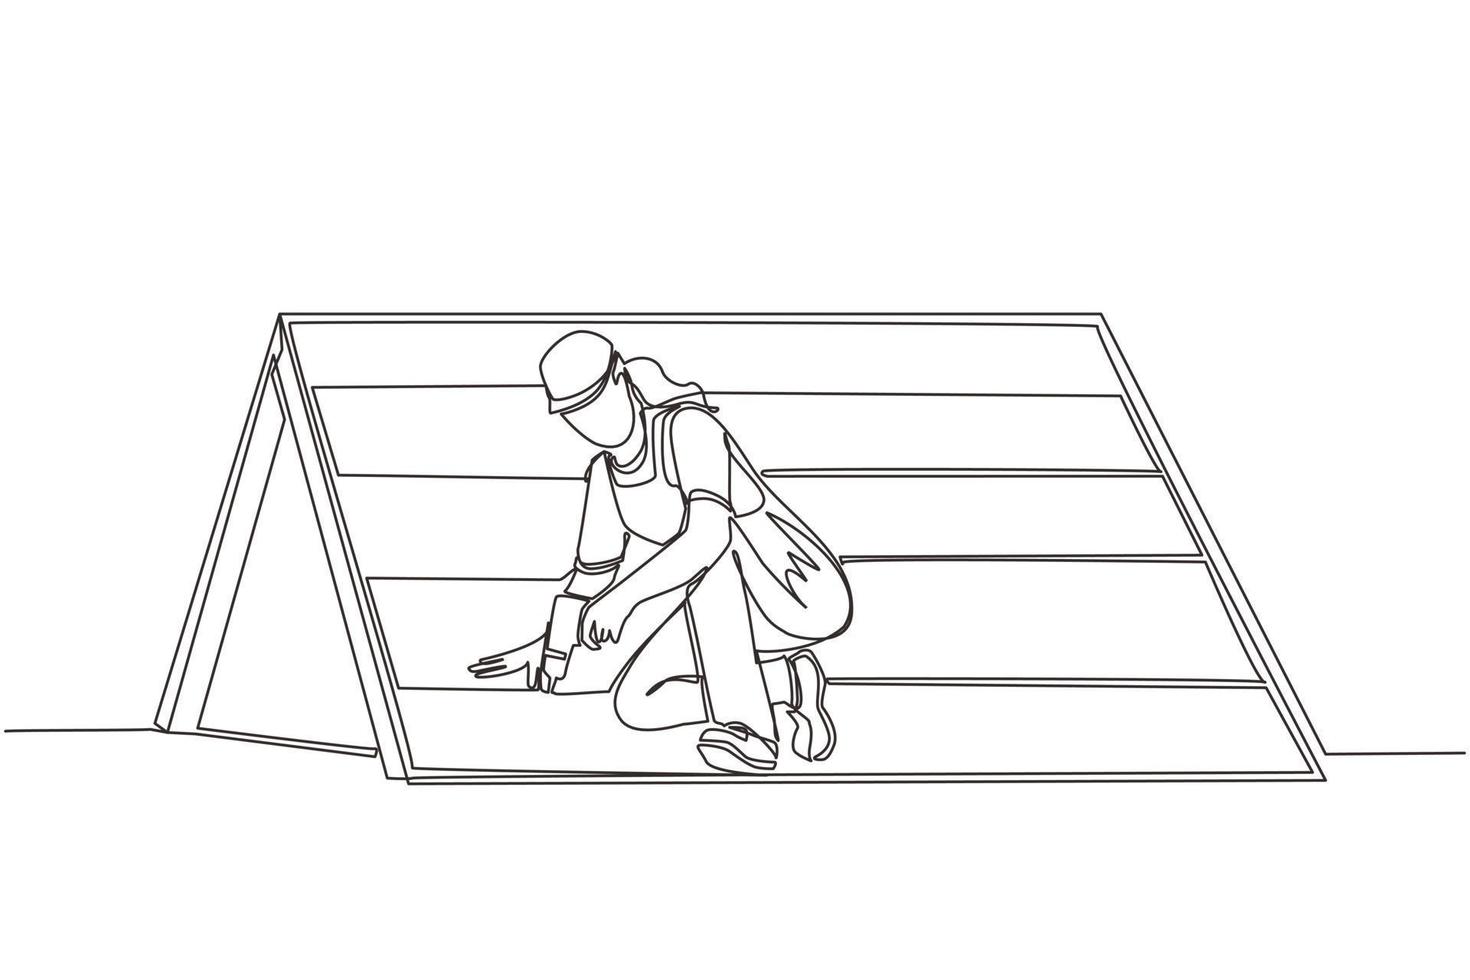 kontinuierliche einzeilige zeichnung dachdecker, der holz- oder bitumenschindeln installiert. dachdeckerfrau, die hausdach mit elektrischem schraubendreher repariert. Reparaturberuf der Reparaturarbeiterin. einzeiliger Entwurfsvektor vektor